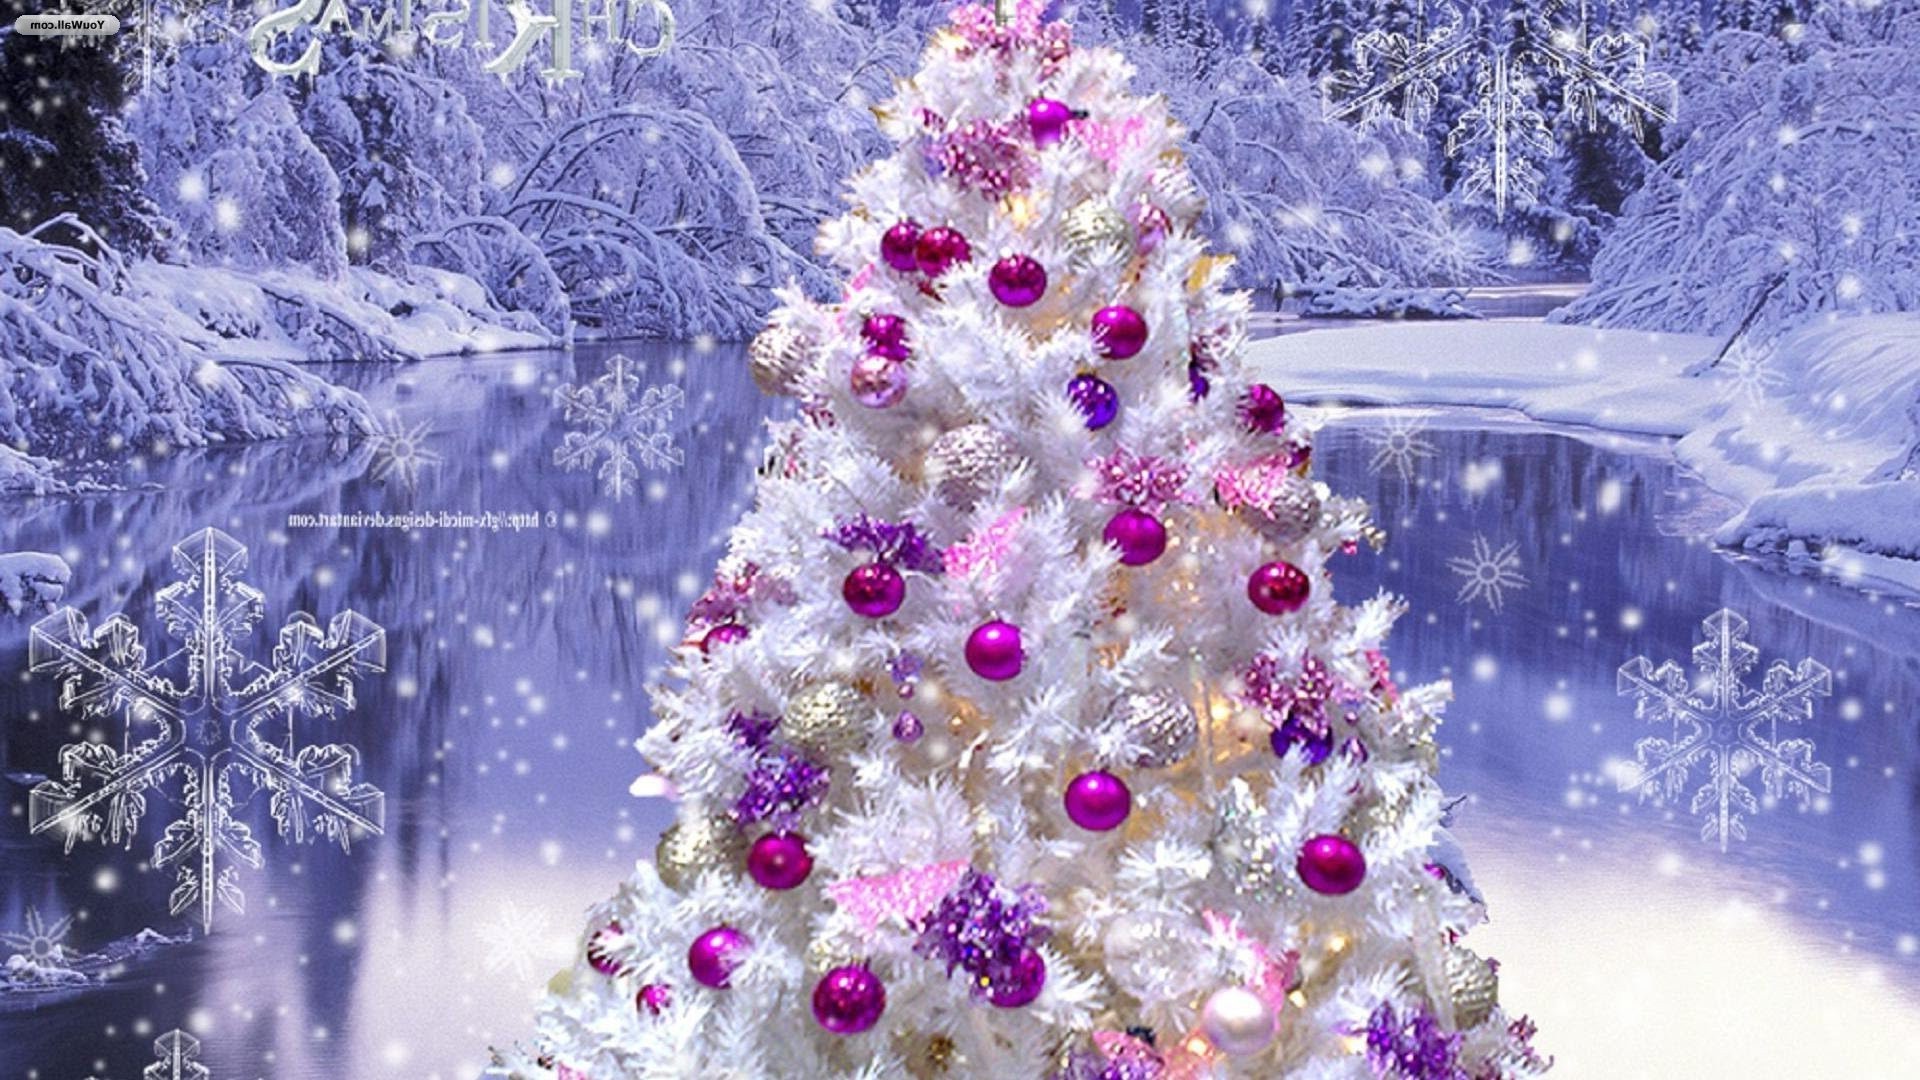 новый год зима рождество снег мороз светит сезон украшения яркий снежинка рабочего стола свет блестят цвет холодная природа